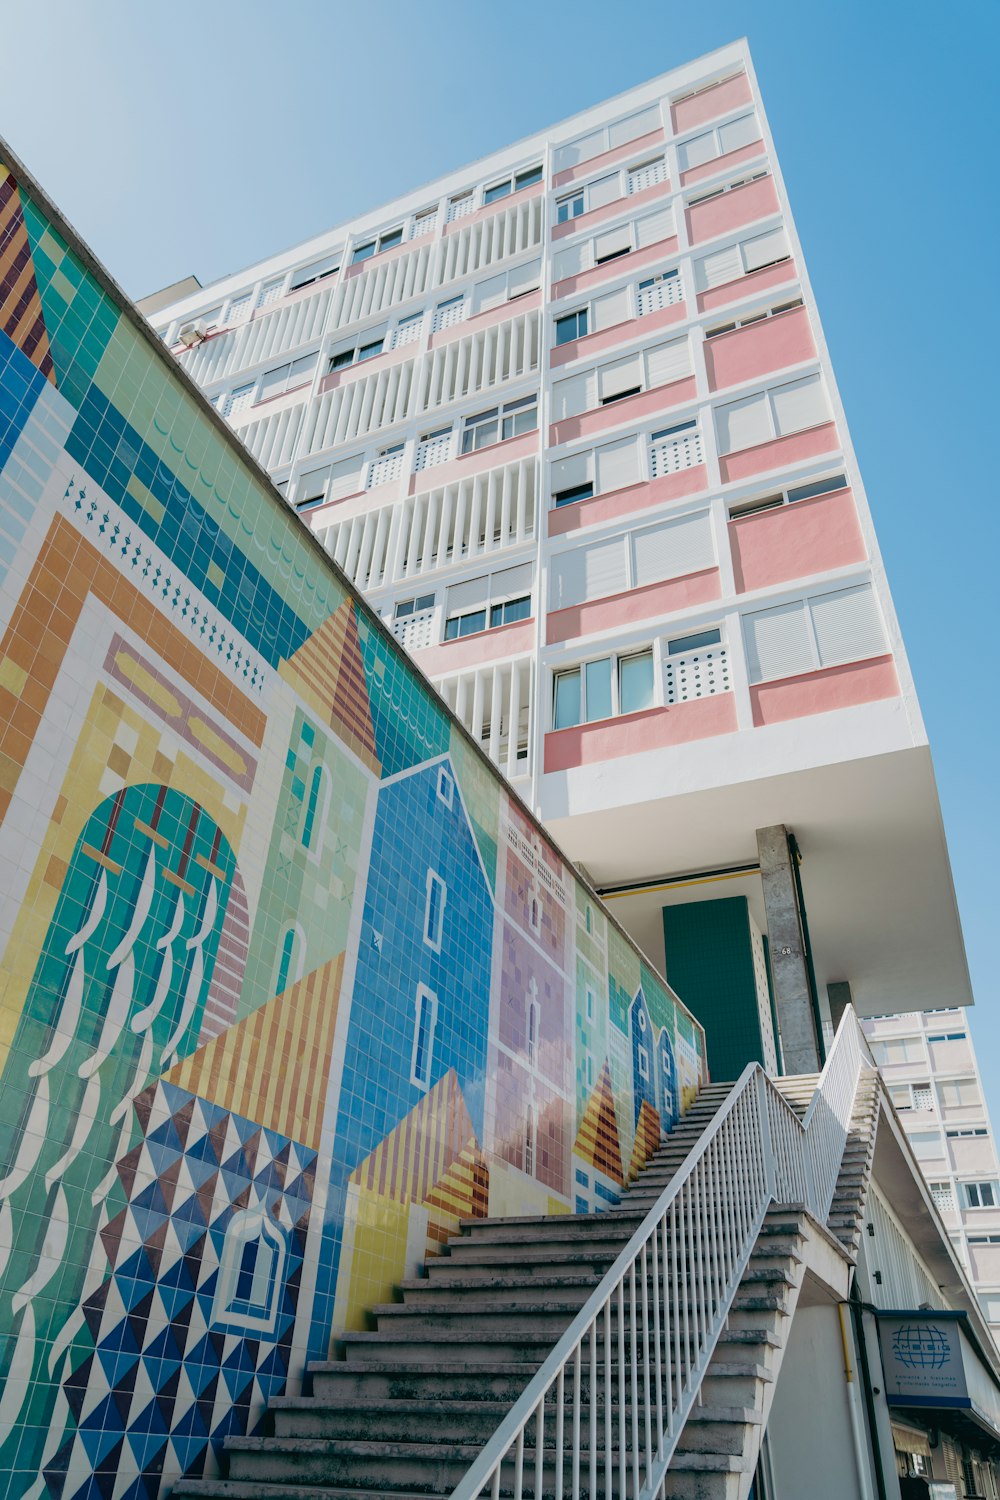 Un colorido mural en el costado de un edificio